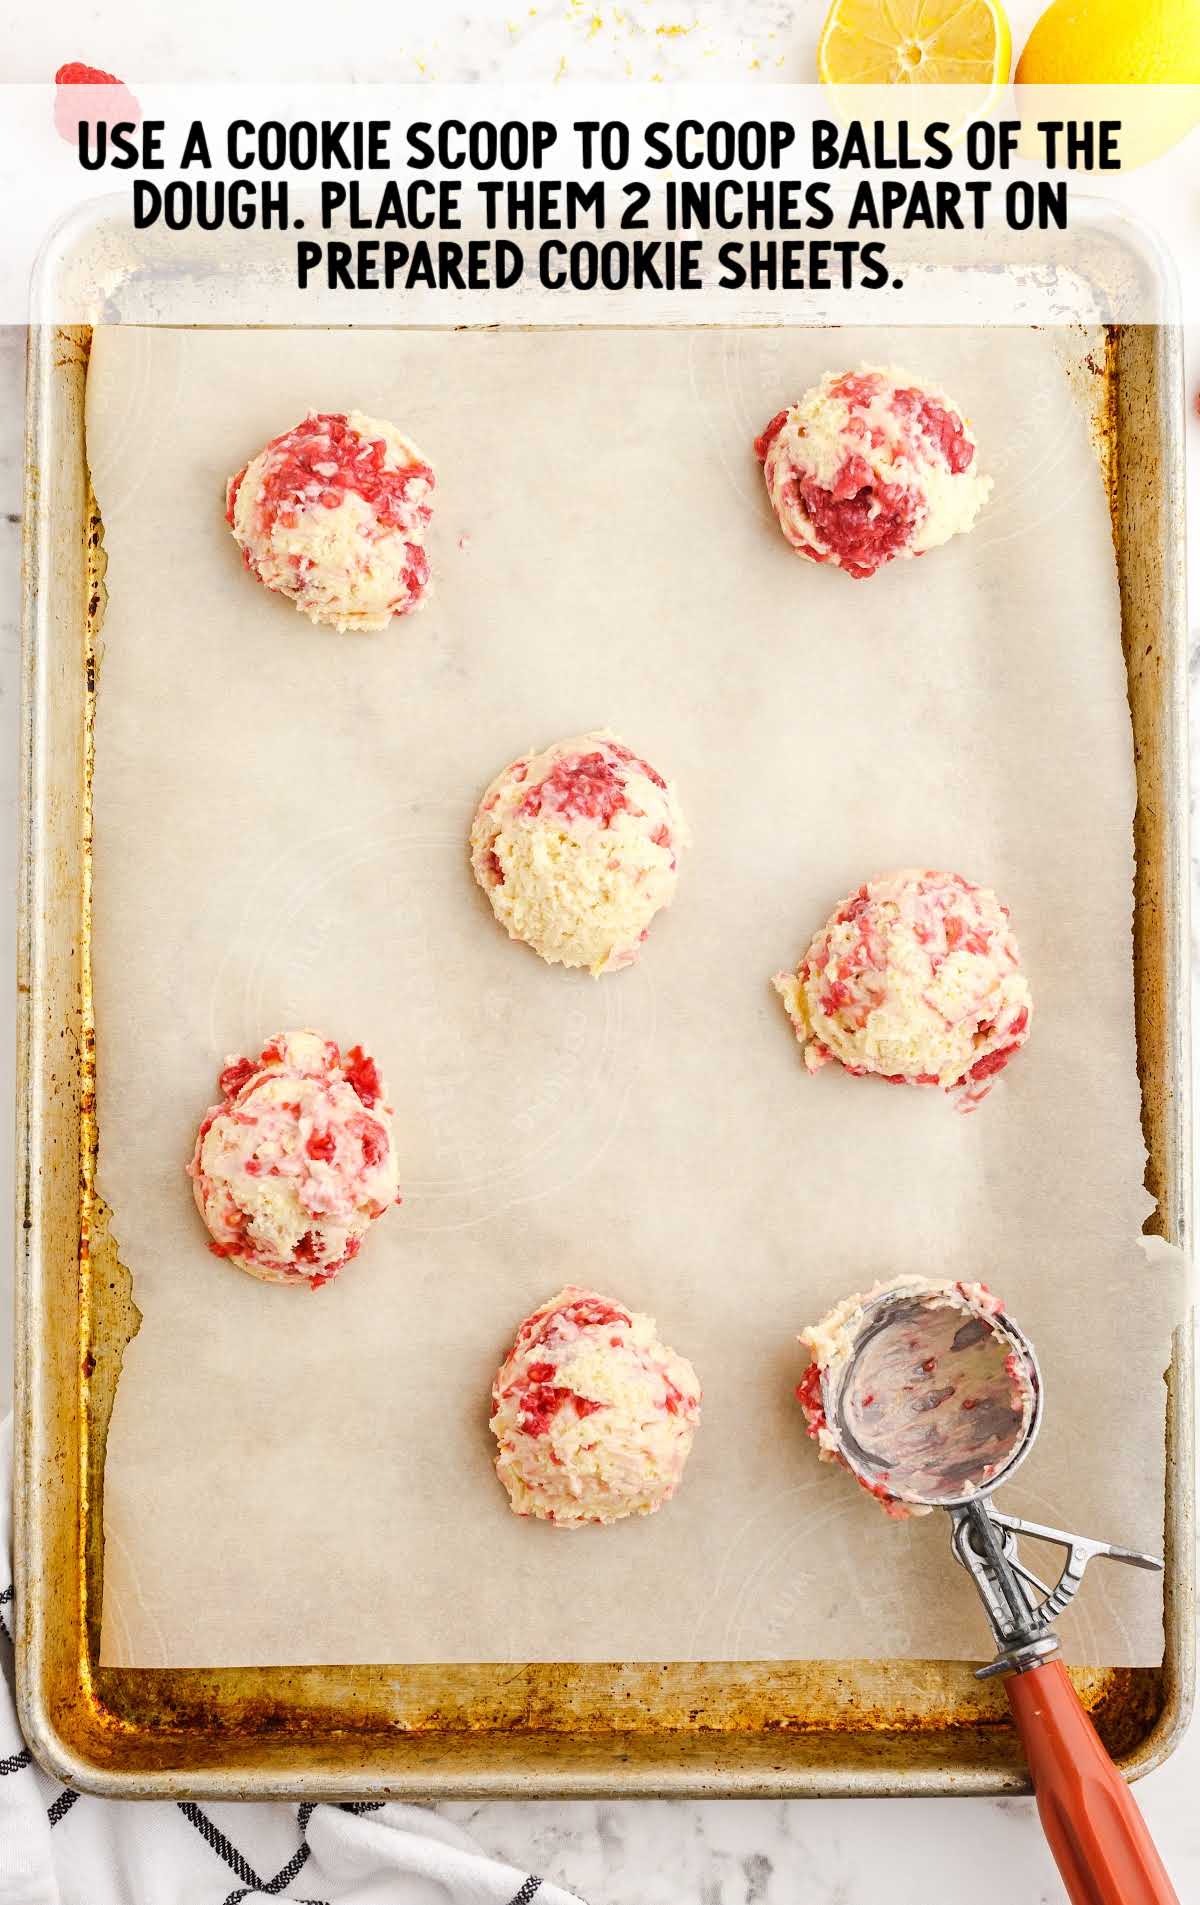 scoop dough balls using cookie scooper